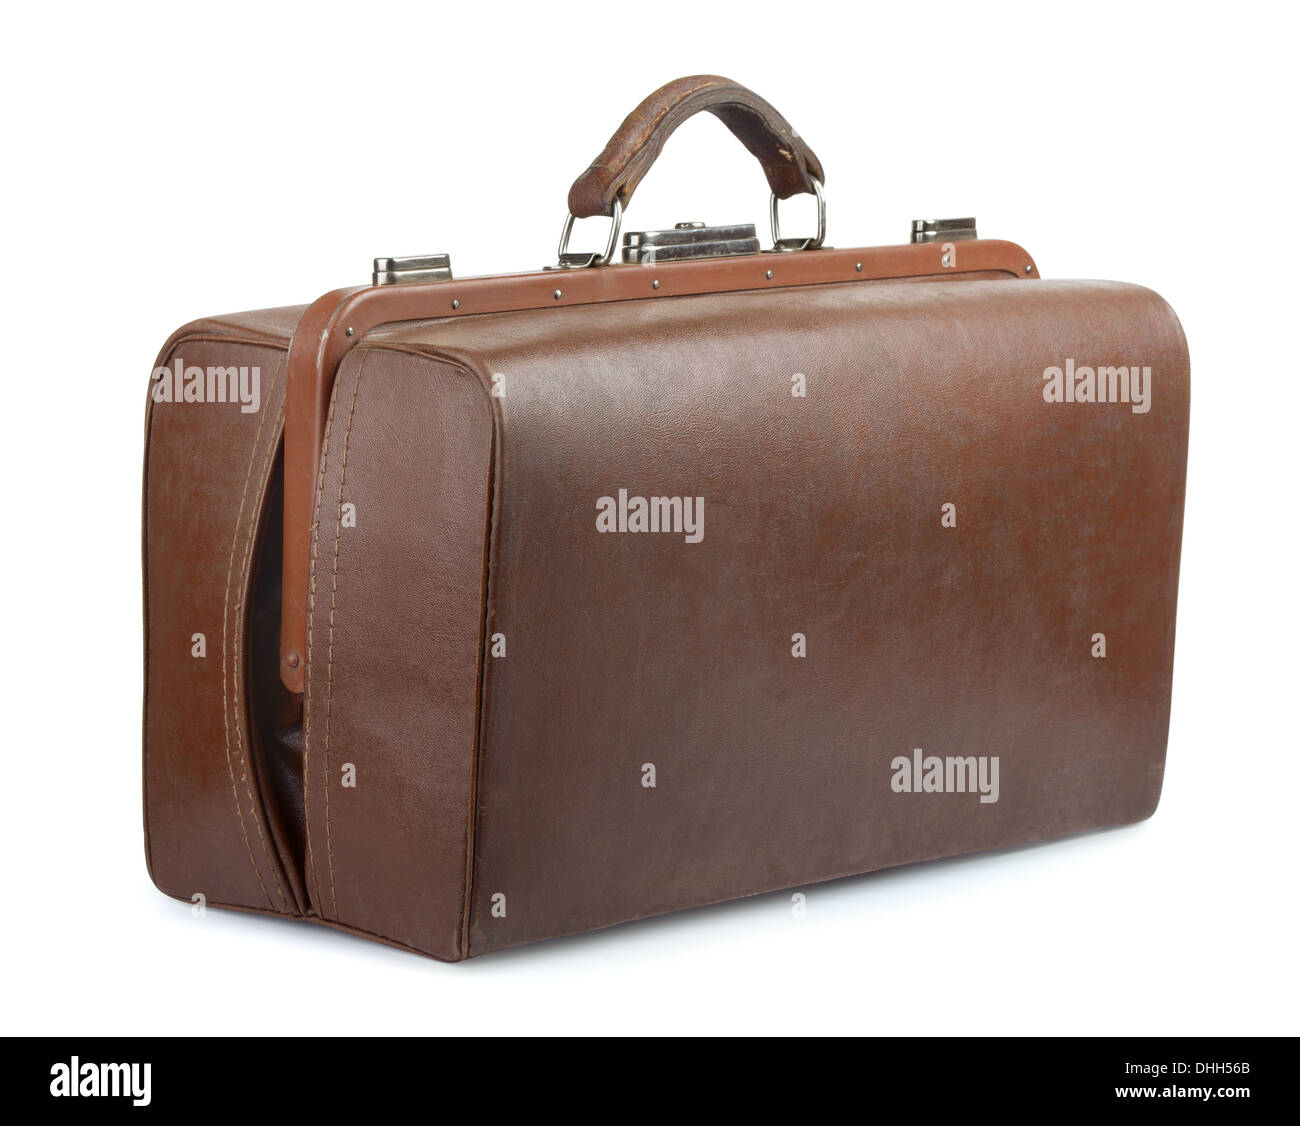 Casco de cuero marrón bolsa de equipaje aislado en blanco Foto de stock